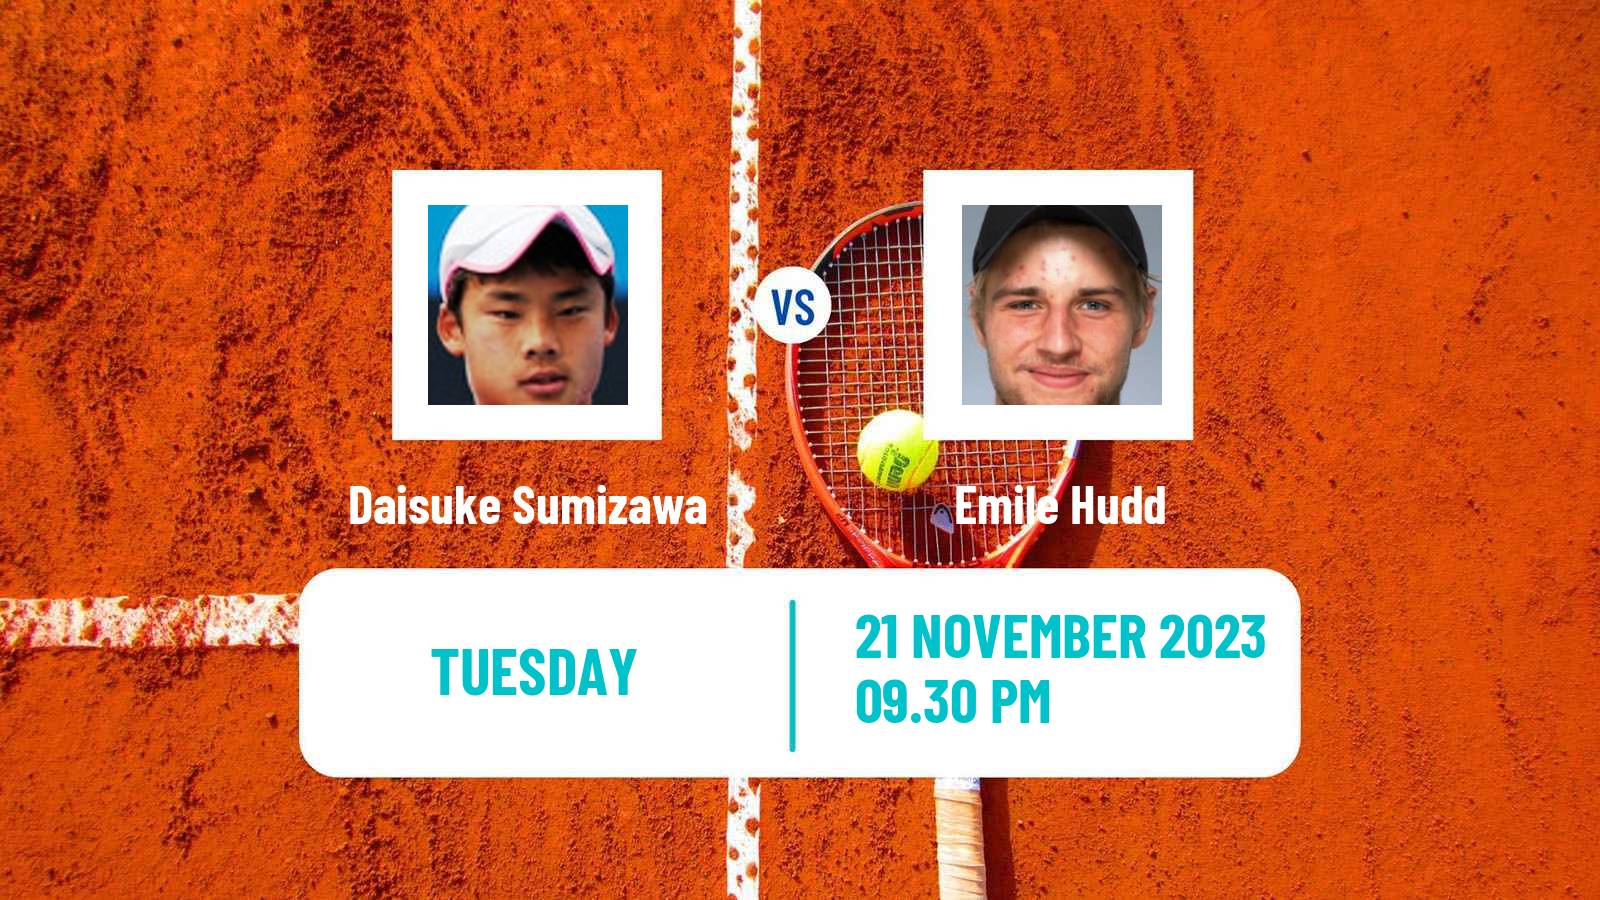 Tennis ITF M25 Brisbane Men Daisuke Sumizawa - Emile Hudd